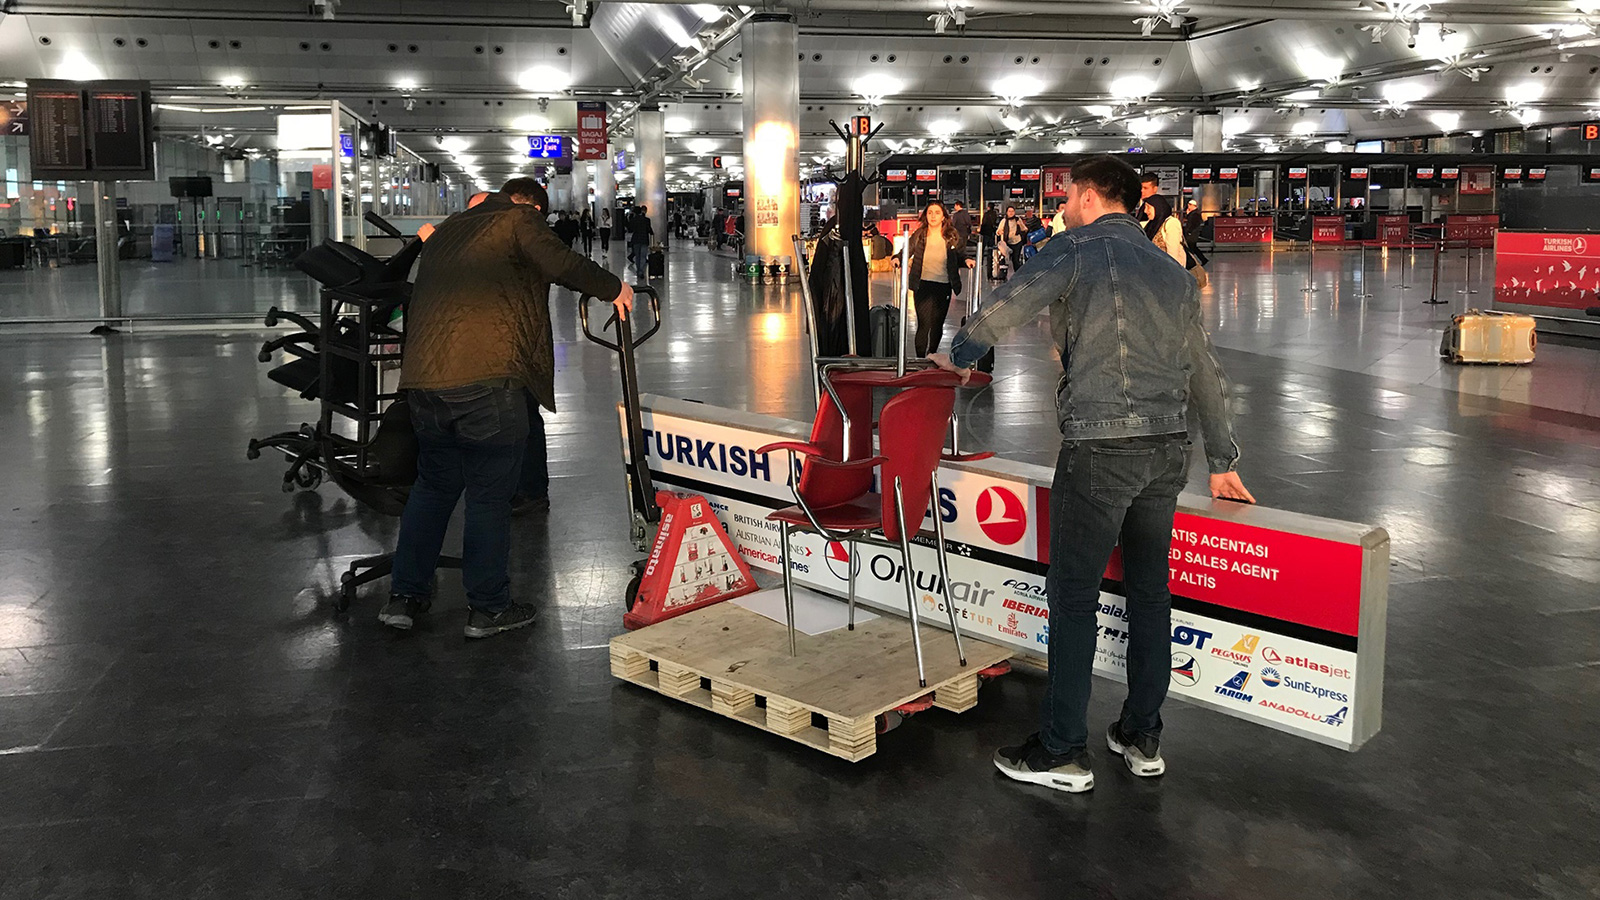 ‪أنور أوزونجو يتعاون مع زملائه لنقل مقتنيات مكتب الخطوط التركية في مطار أتاتورك قبيل إغلاقه‬ (الجزيرة)